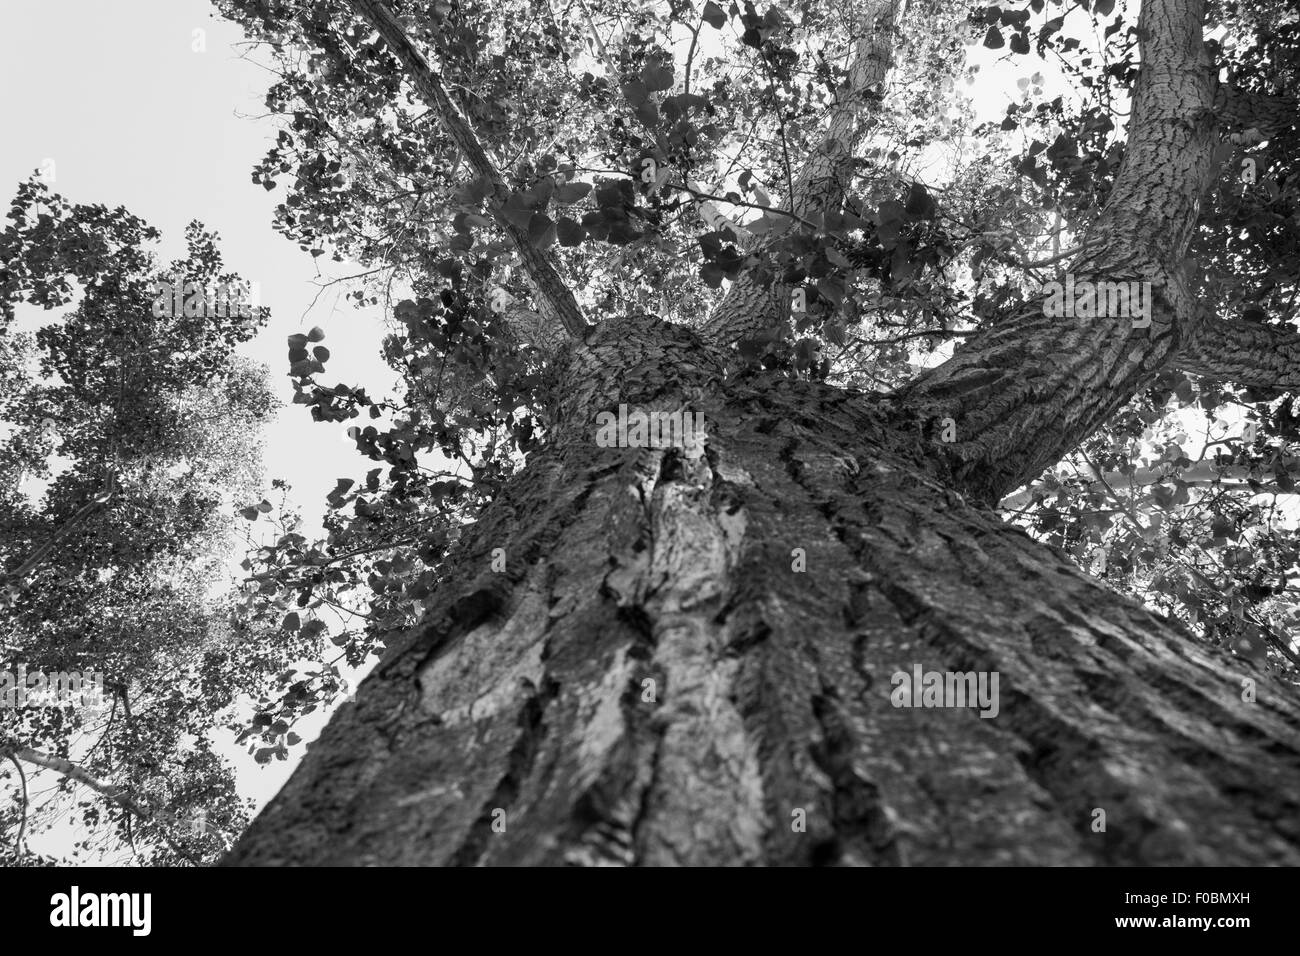 Ein Blick hinauf in den Ästen eines alten Baumes.  Aufgenommen am Kin Coulee Park in Medicine Hat, Alberta, Kanada Stockfoto